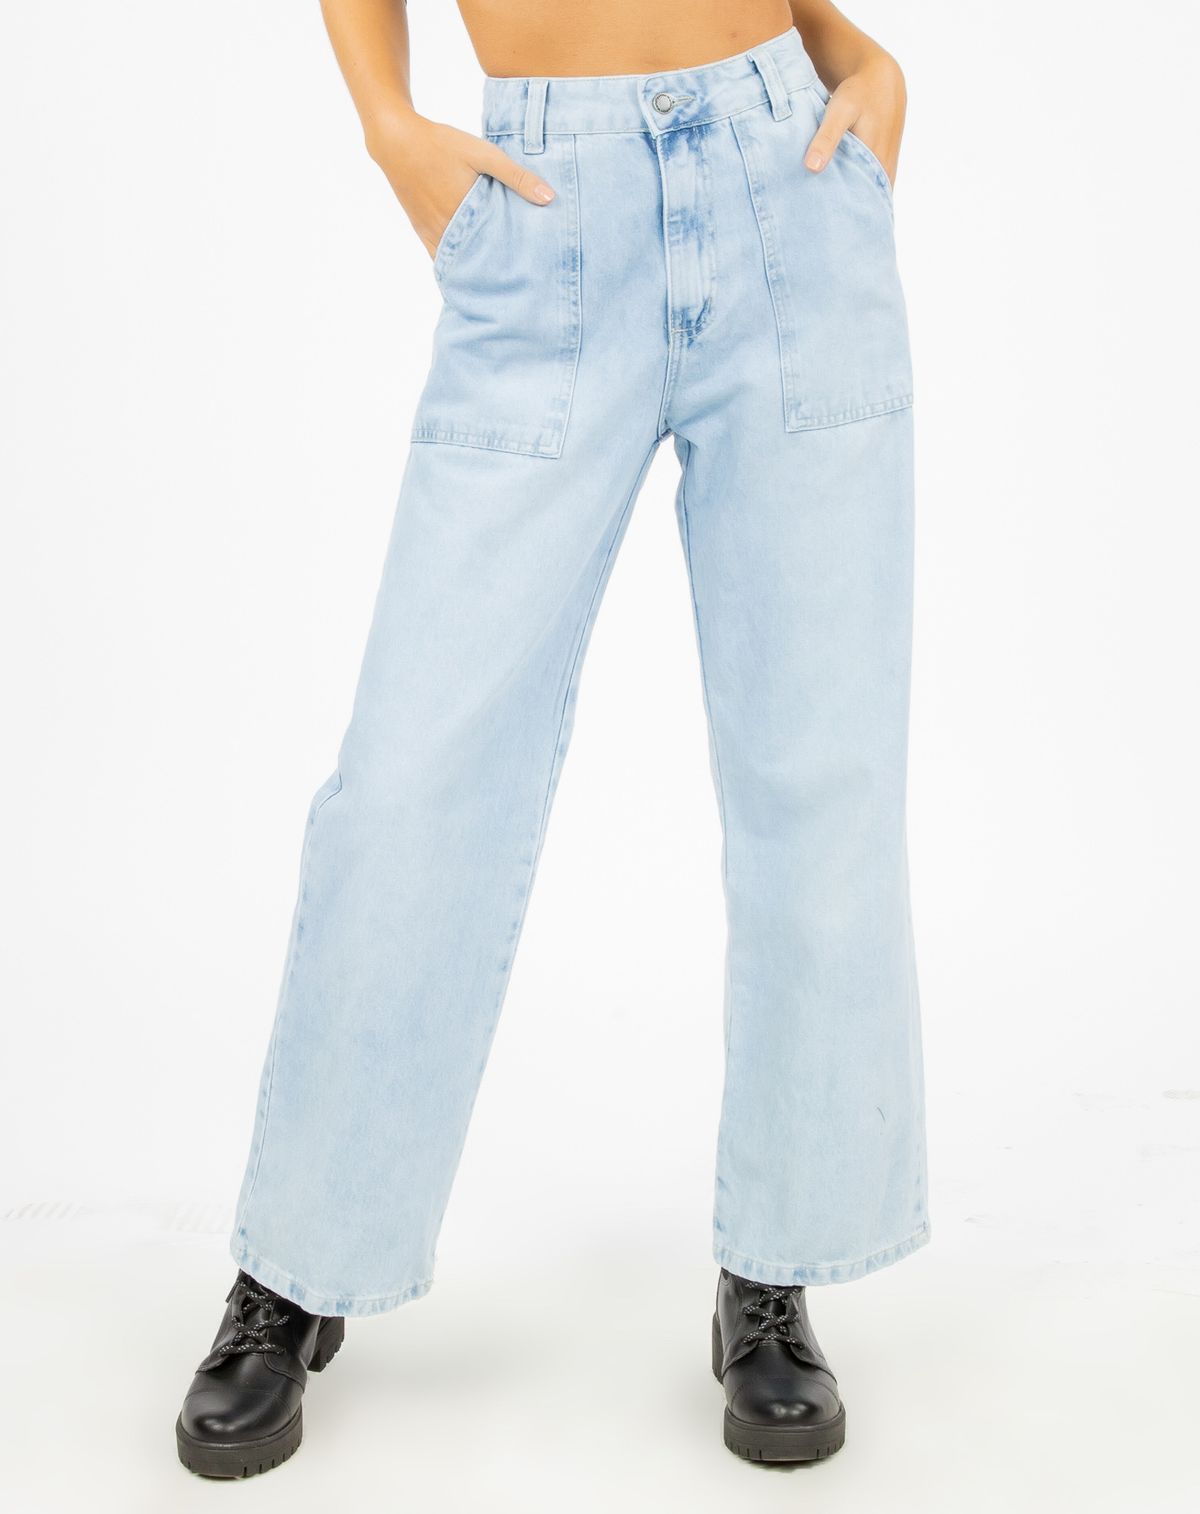 624752001-calca-jeans-pantalona-feminina-bolsos-jeans-36-ded